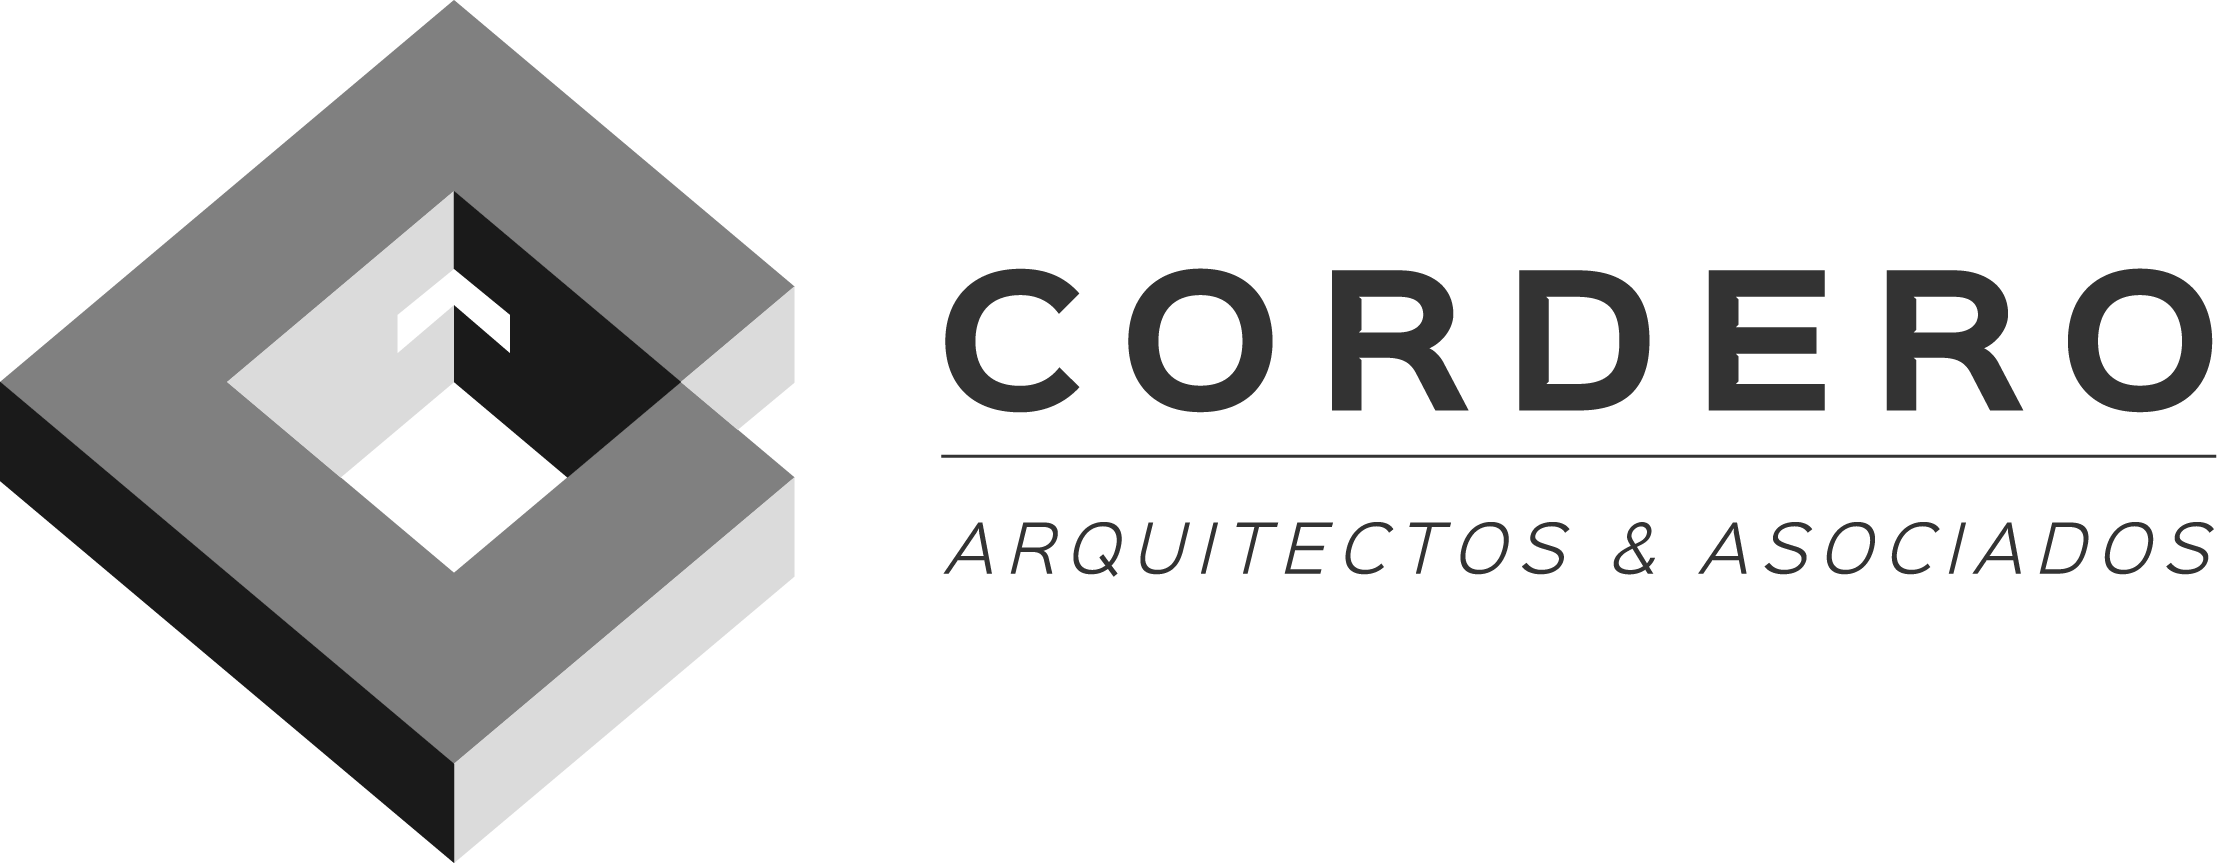 Cordero Arquitectos & Asociados